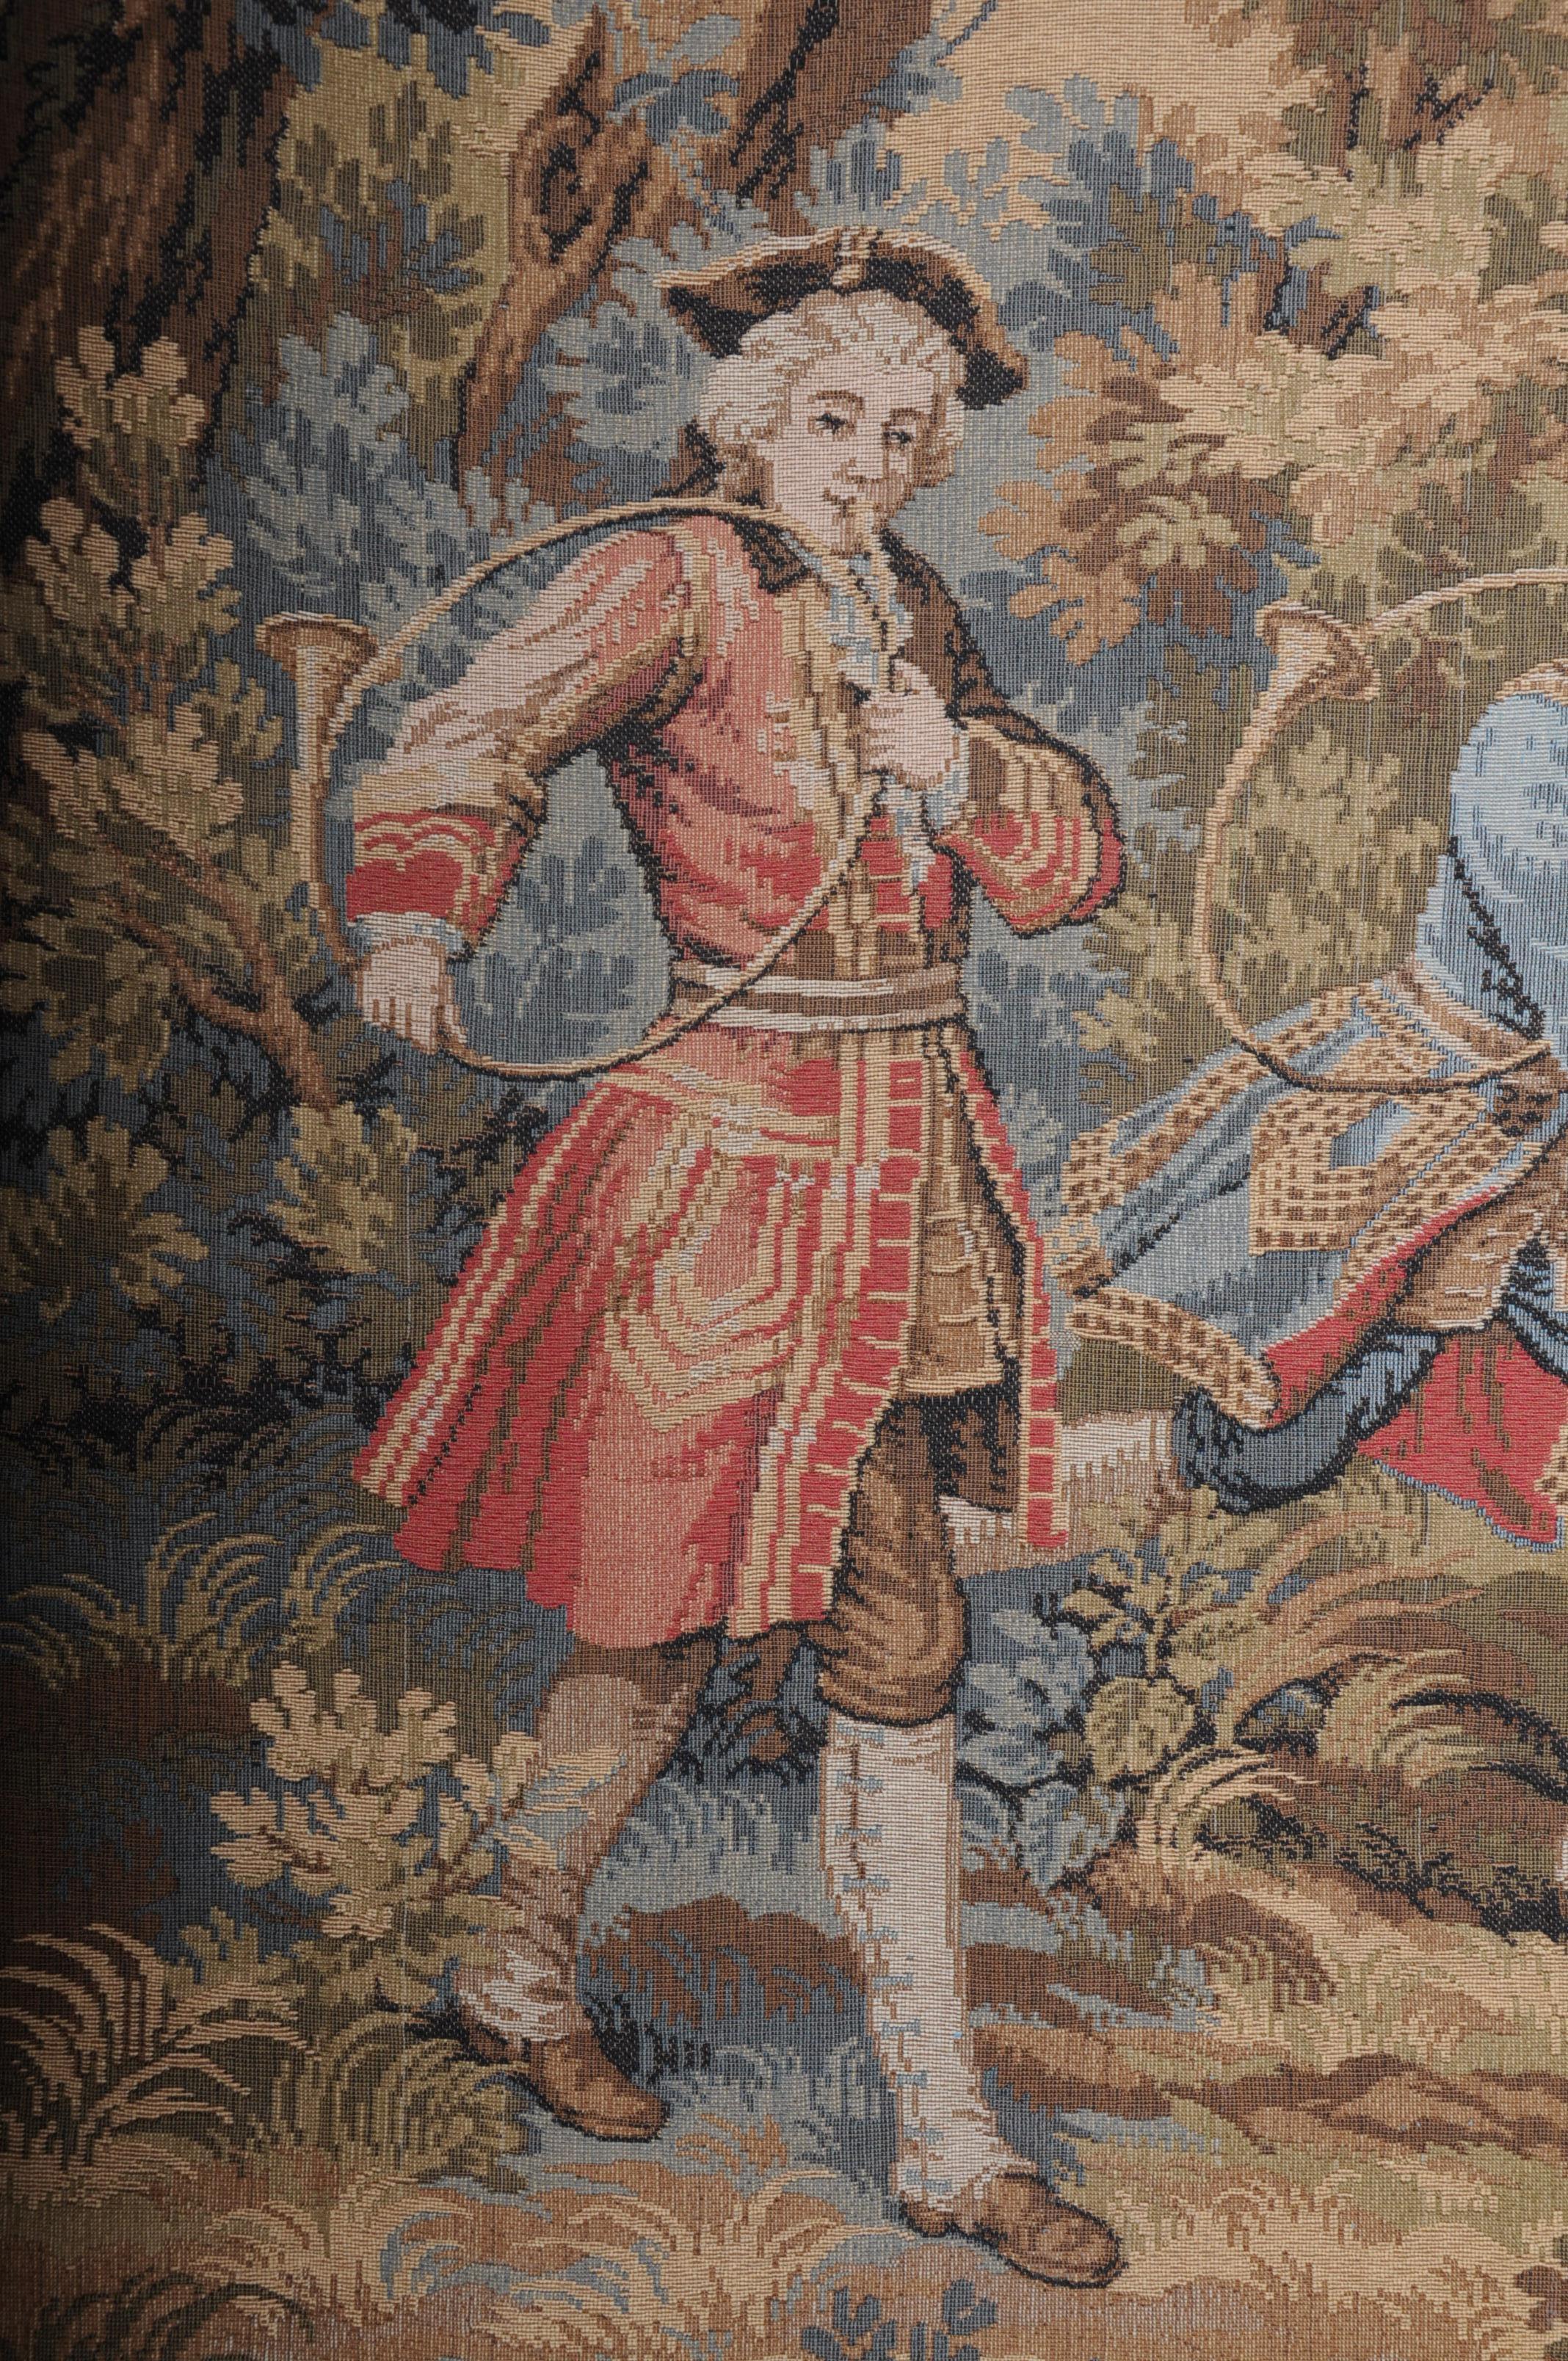 gobelin tapestries